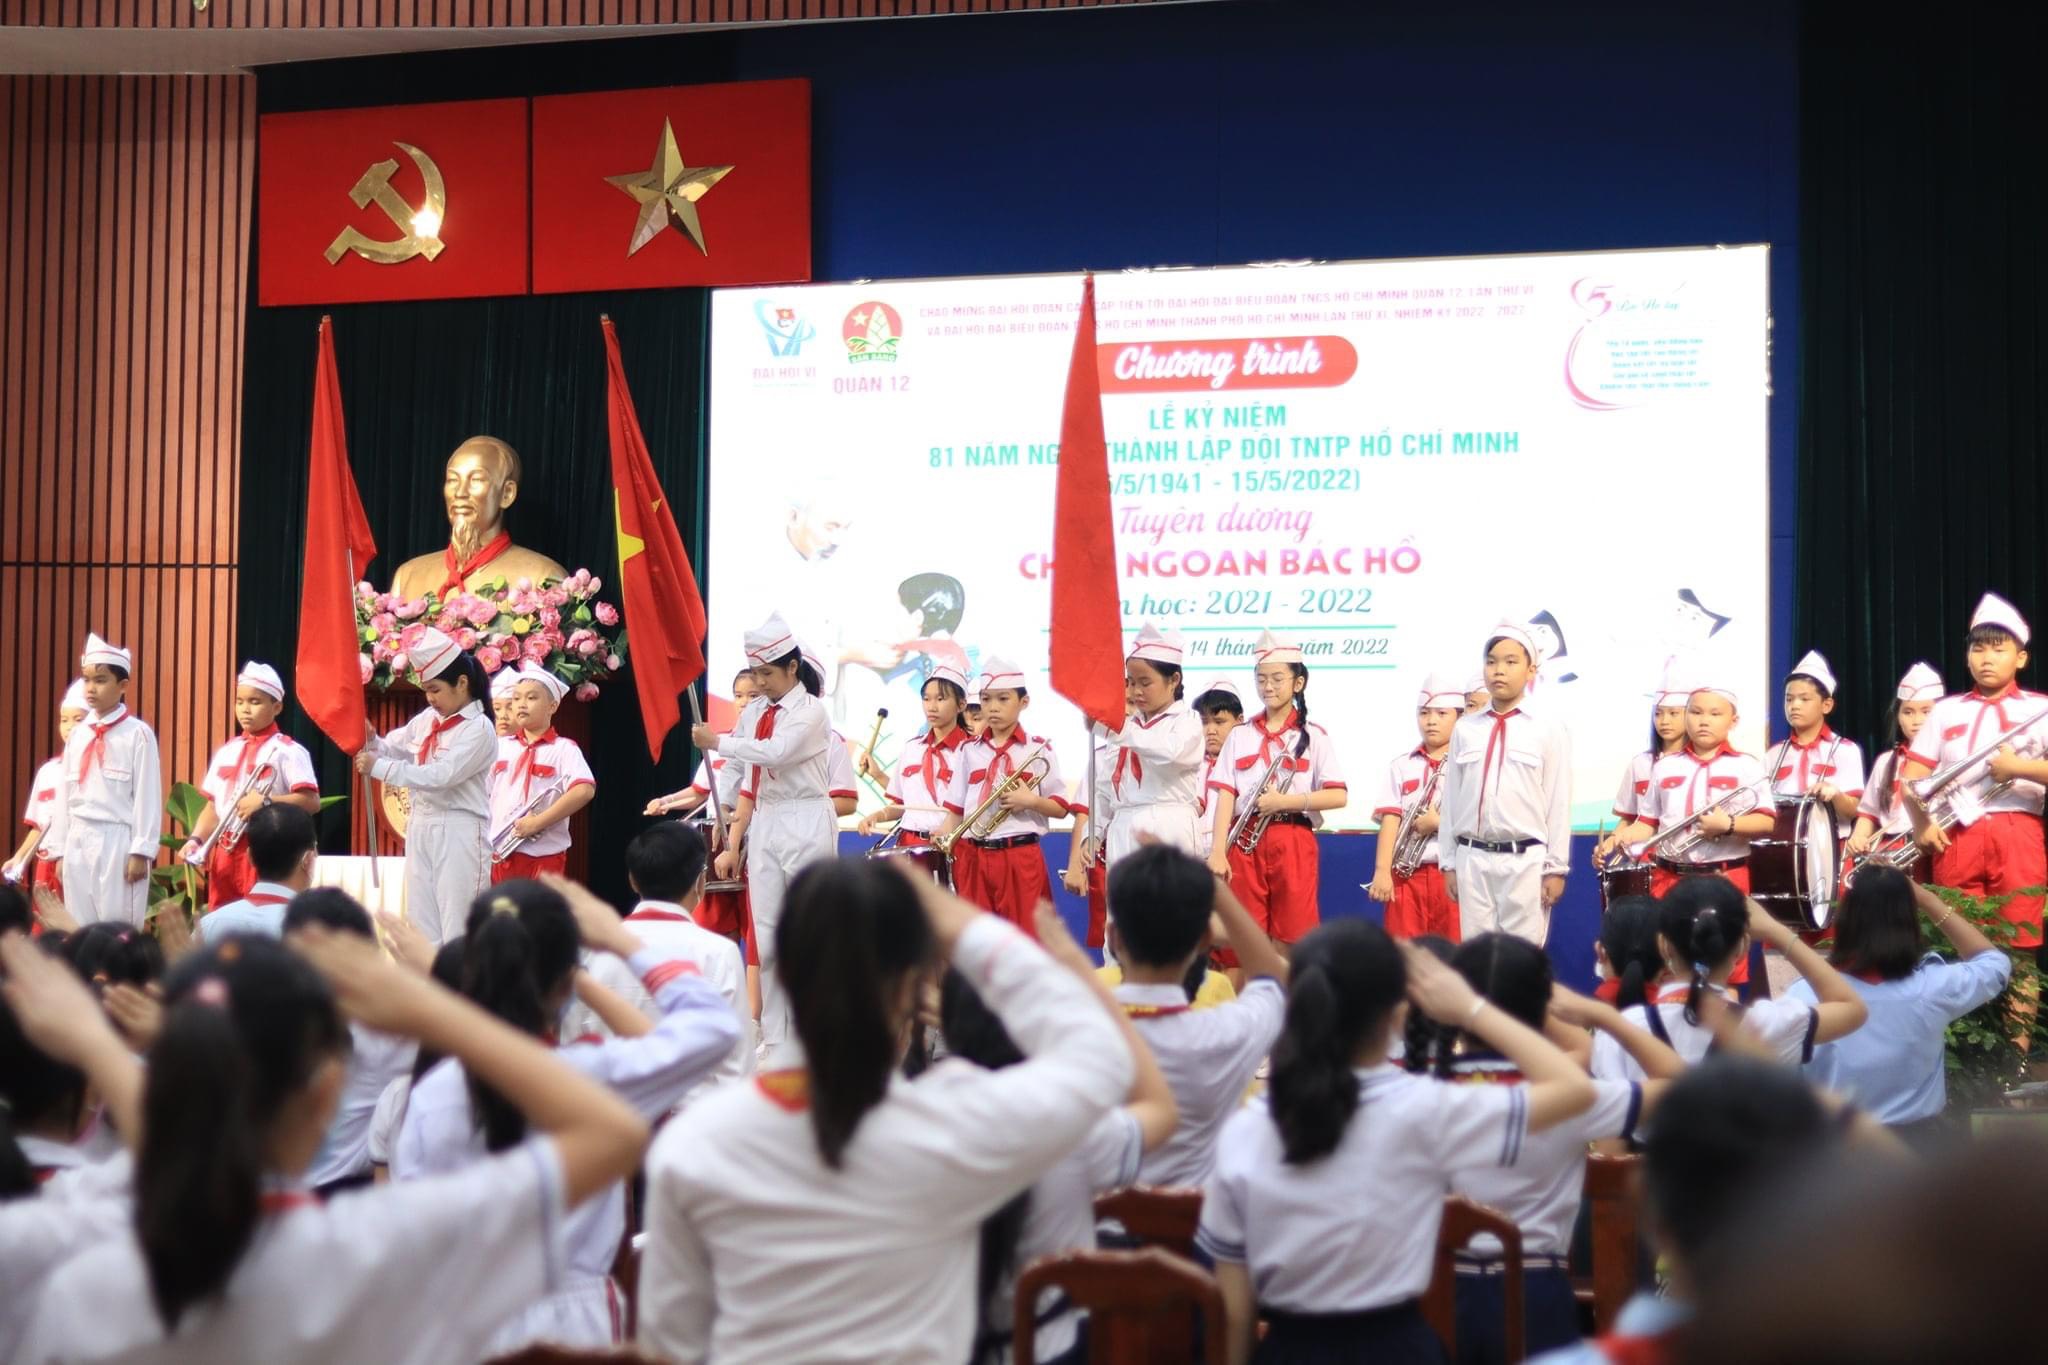 Tổ chức lễ Kỷ niệm 81 năm Ngày thành lập Đội TNTP Hồ Chí Minh (15/5/1941 - 15/5/2022)